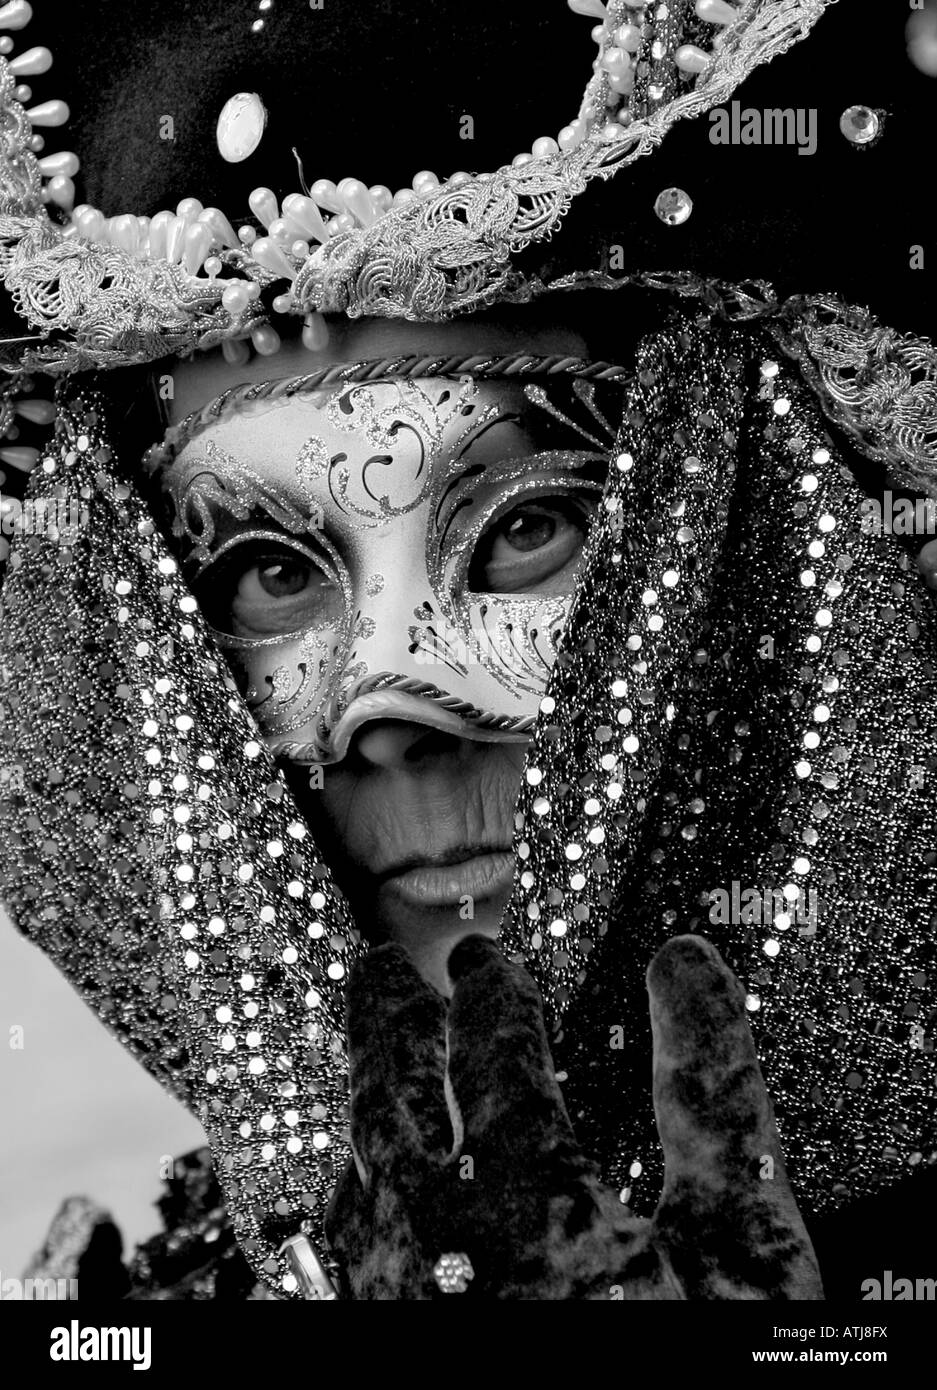 Portrait noir et blanc d'une femme âgée habillés en costume et masque prenant part à la Carnaval de Venise Vénétie Italie Banque D'Images